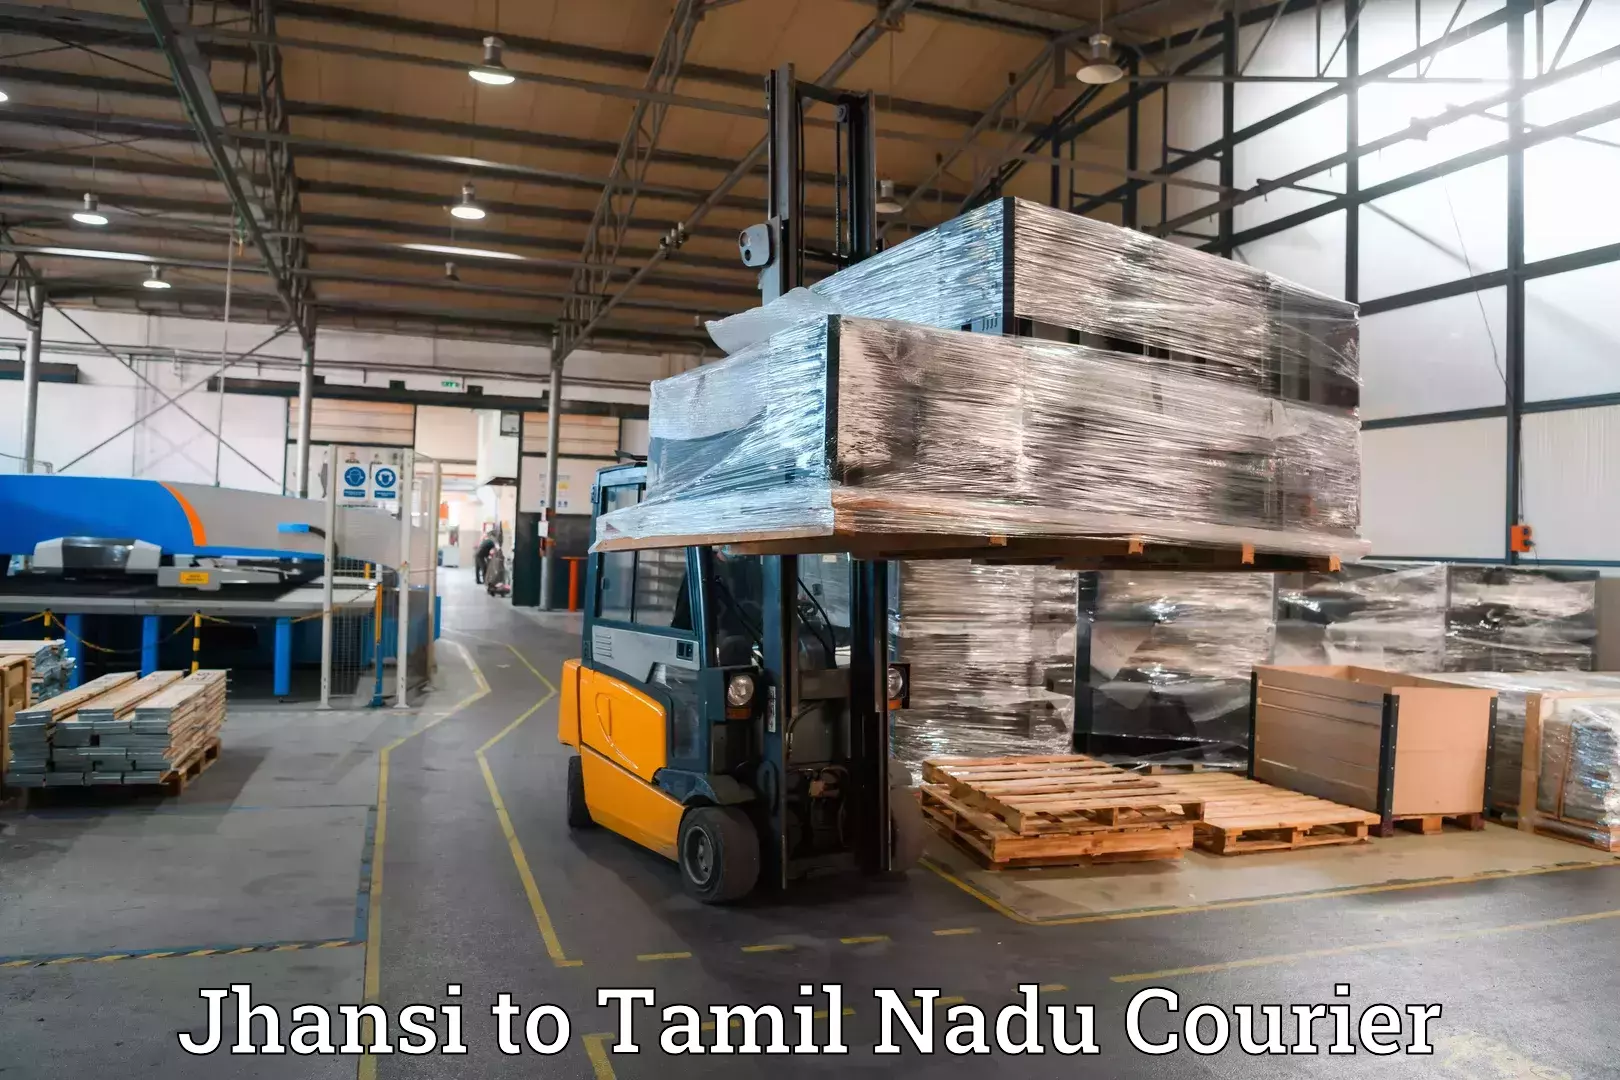 Baggage transport updates Jhansi to Tamil Nadu